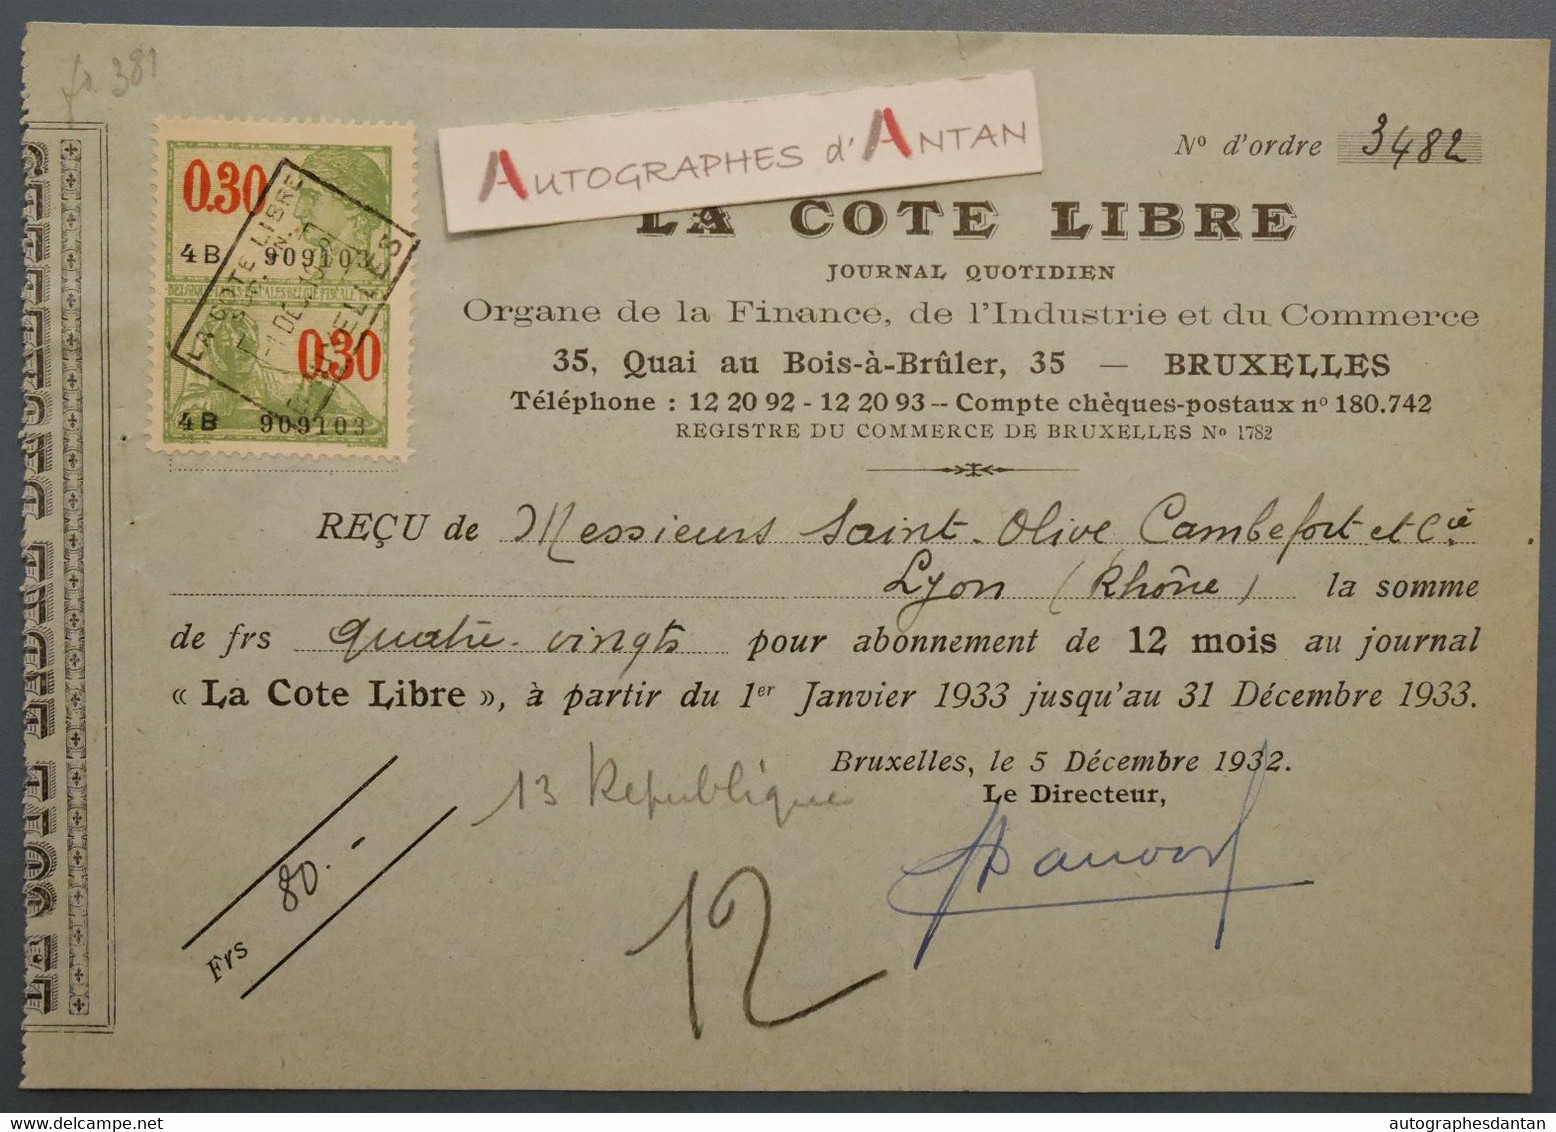 1932 Bruxelles La Cote Libre Journal Quotidien - Reçu Mrs Saint Olive Cambefort à Lyon - France Belgique - Timbre Fiscal - Banque & Assurance